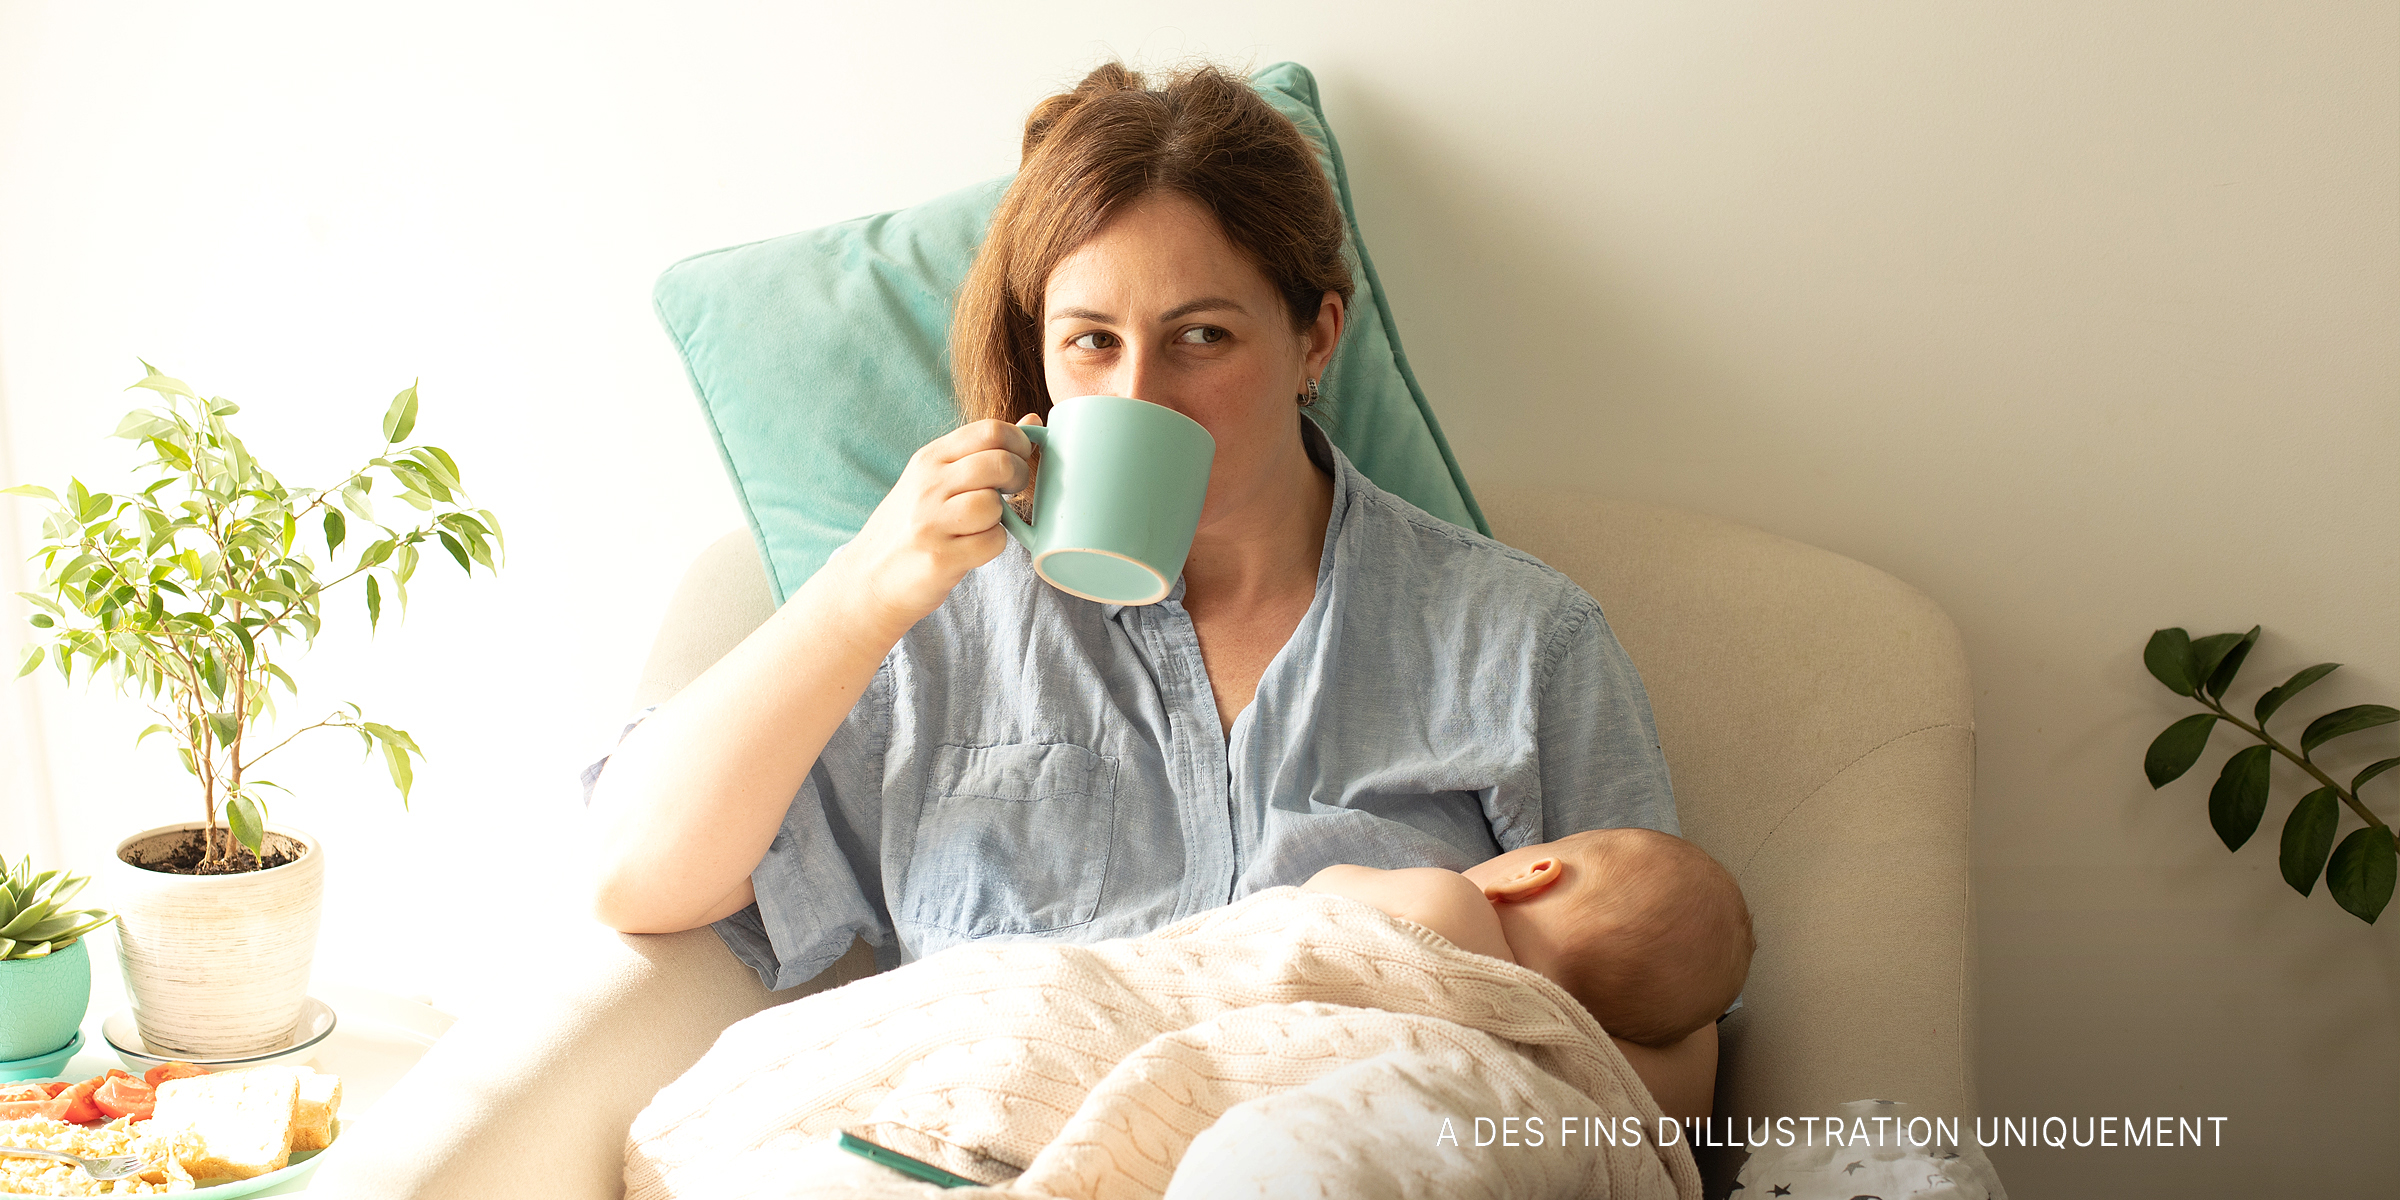 Une femme qui allaite son nouveau-né tout en buvant du thé | Source : Shutterstock